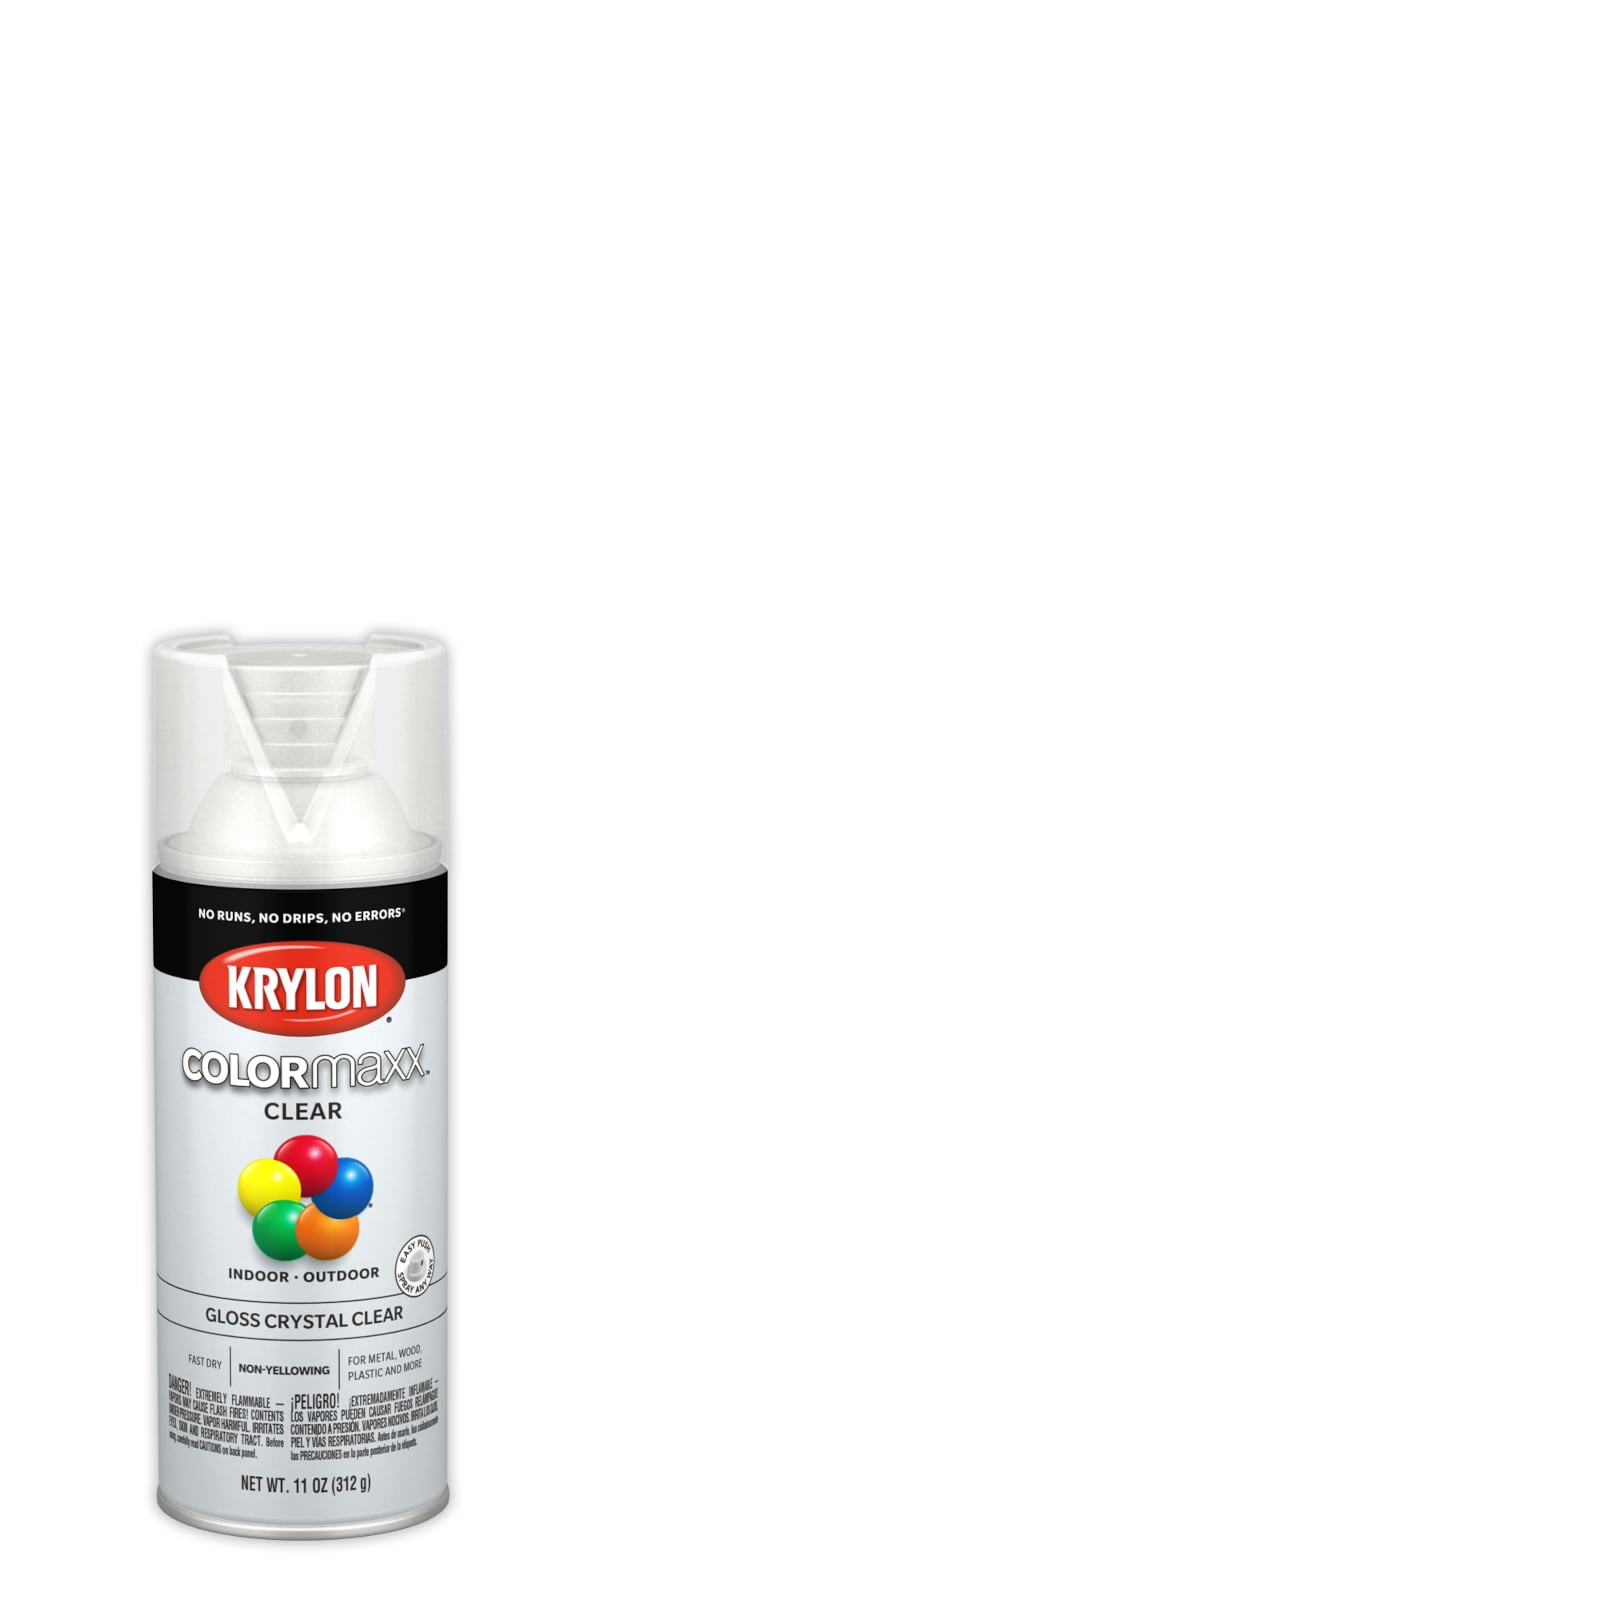 Krylon 5-Ball Paint K01301A07, Gloss Crystal Clear, 16 oz